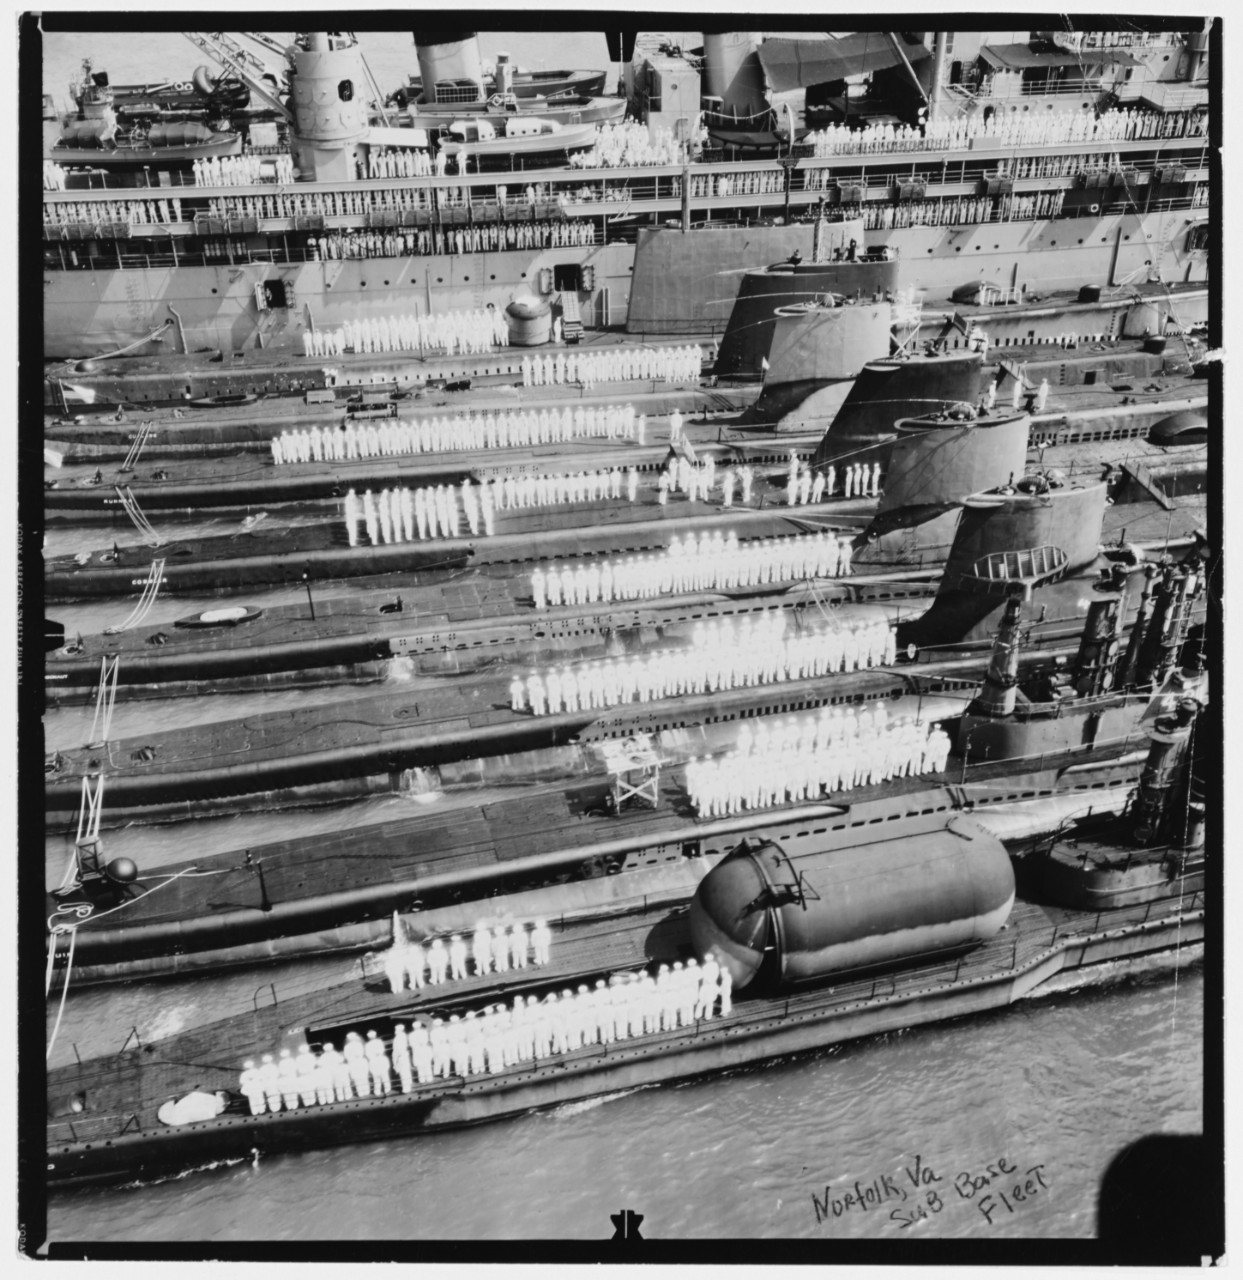 Submarines at Norfolk Naval Base